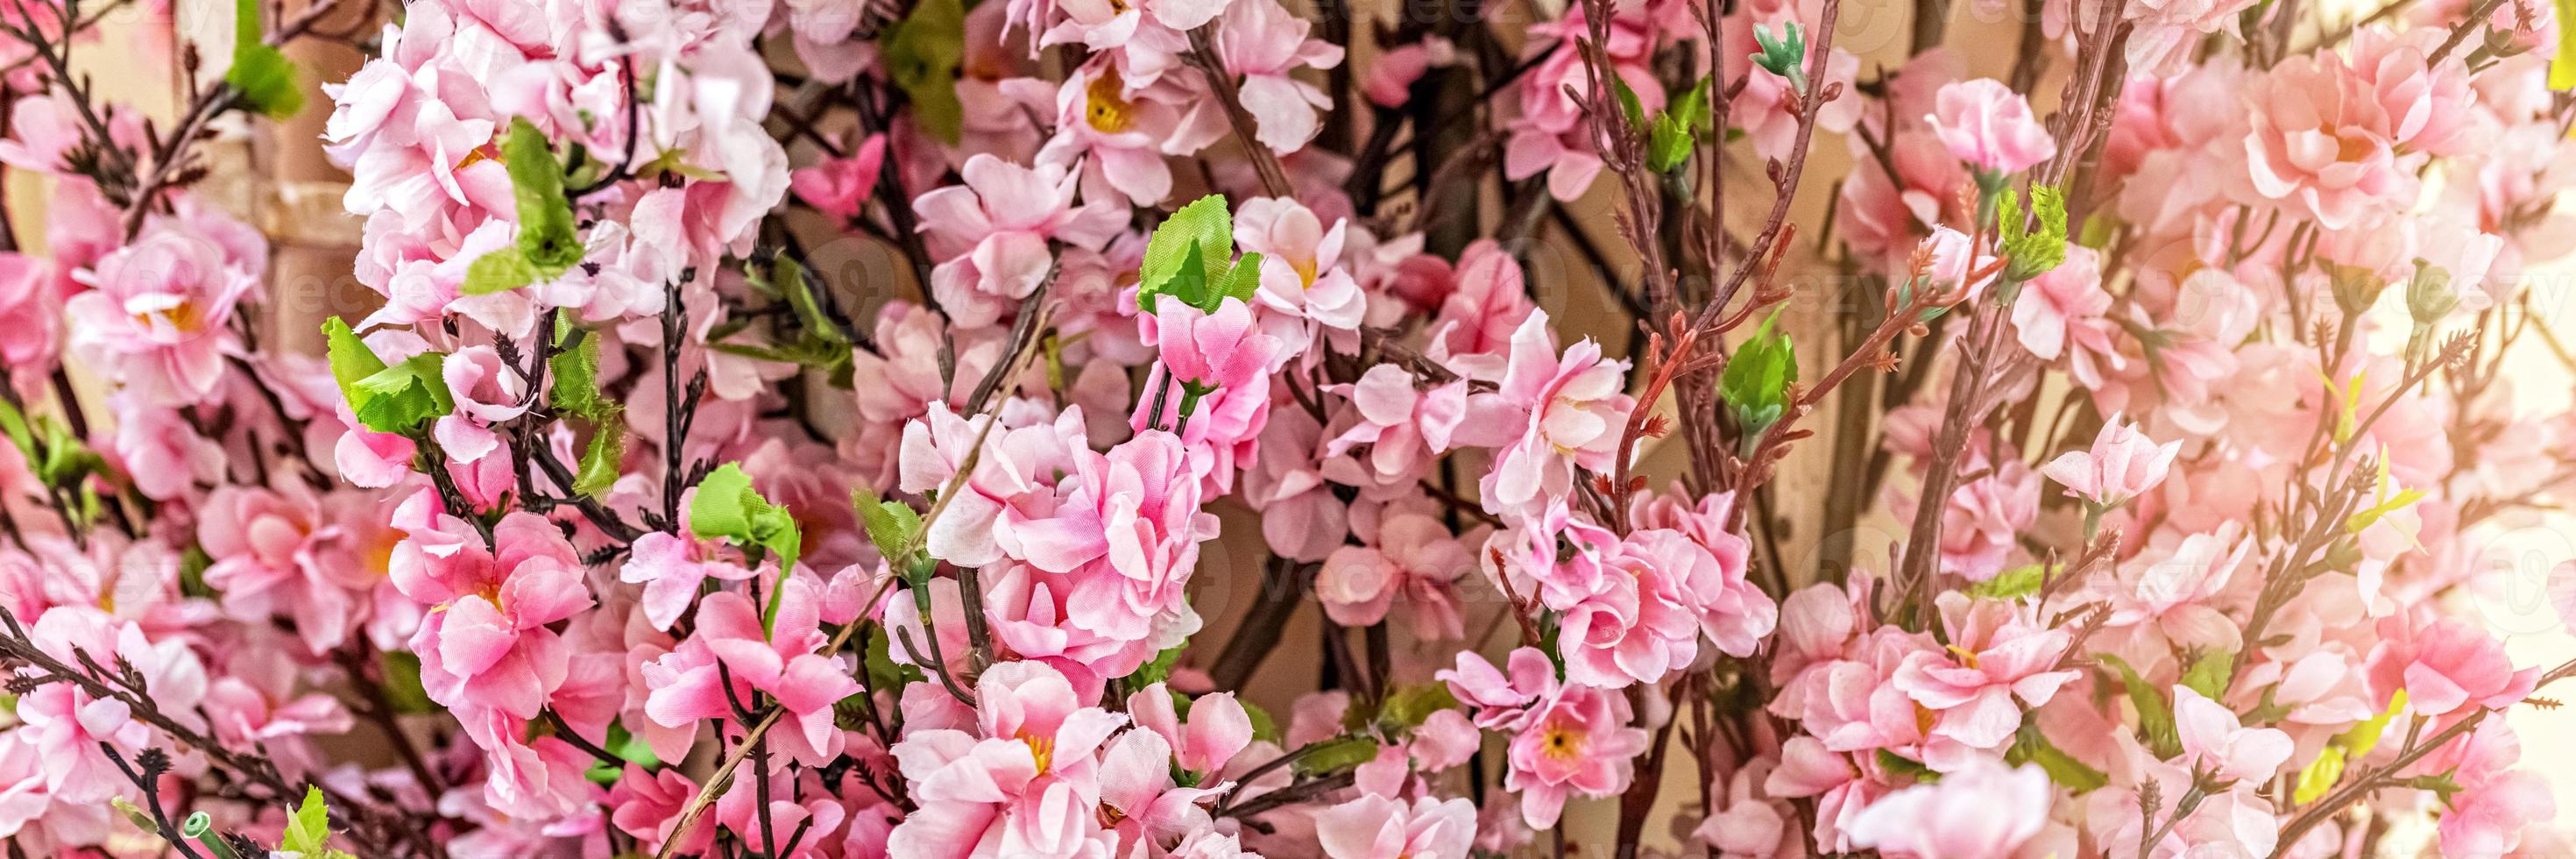 ramos com flores rosa sakura em fundo desfocado foto